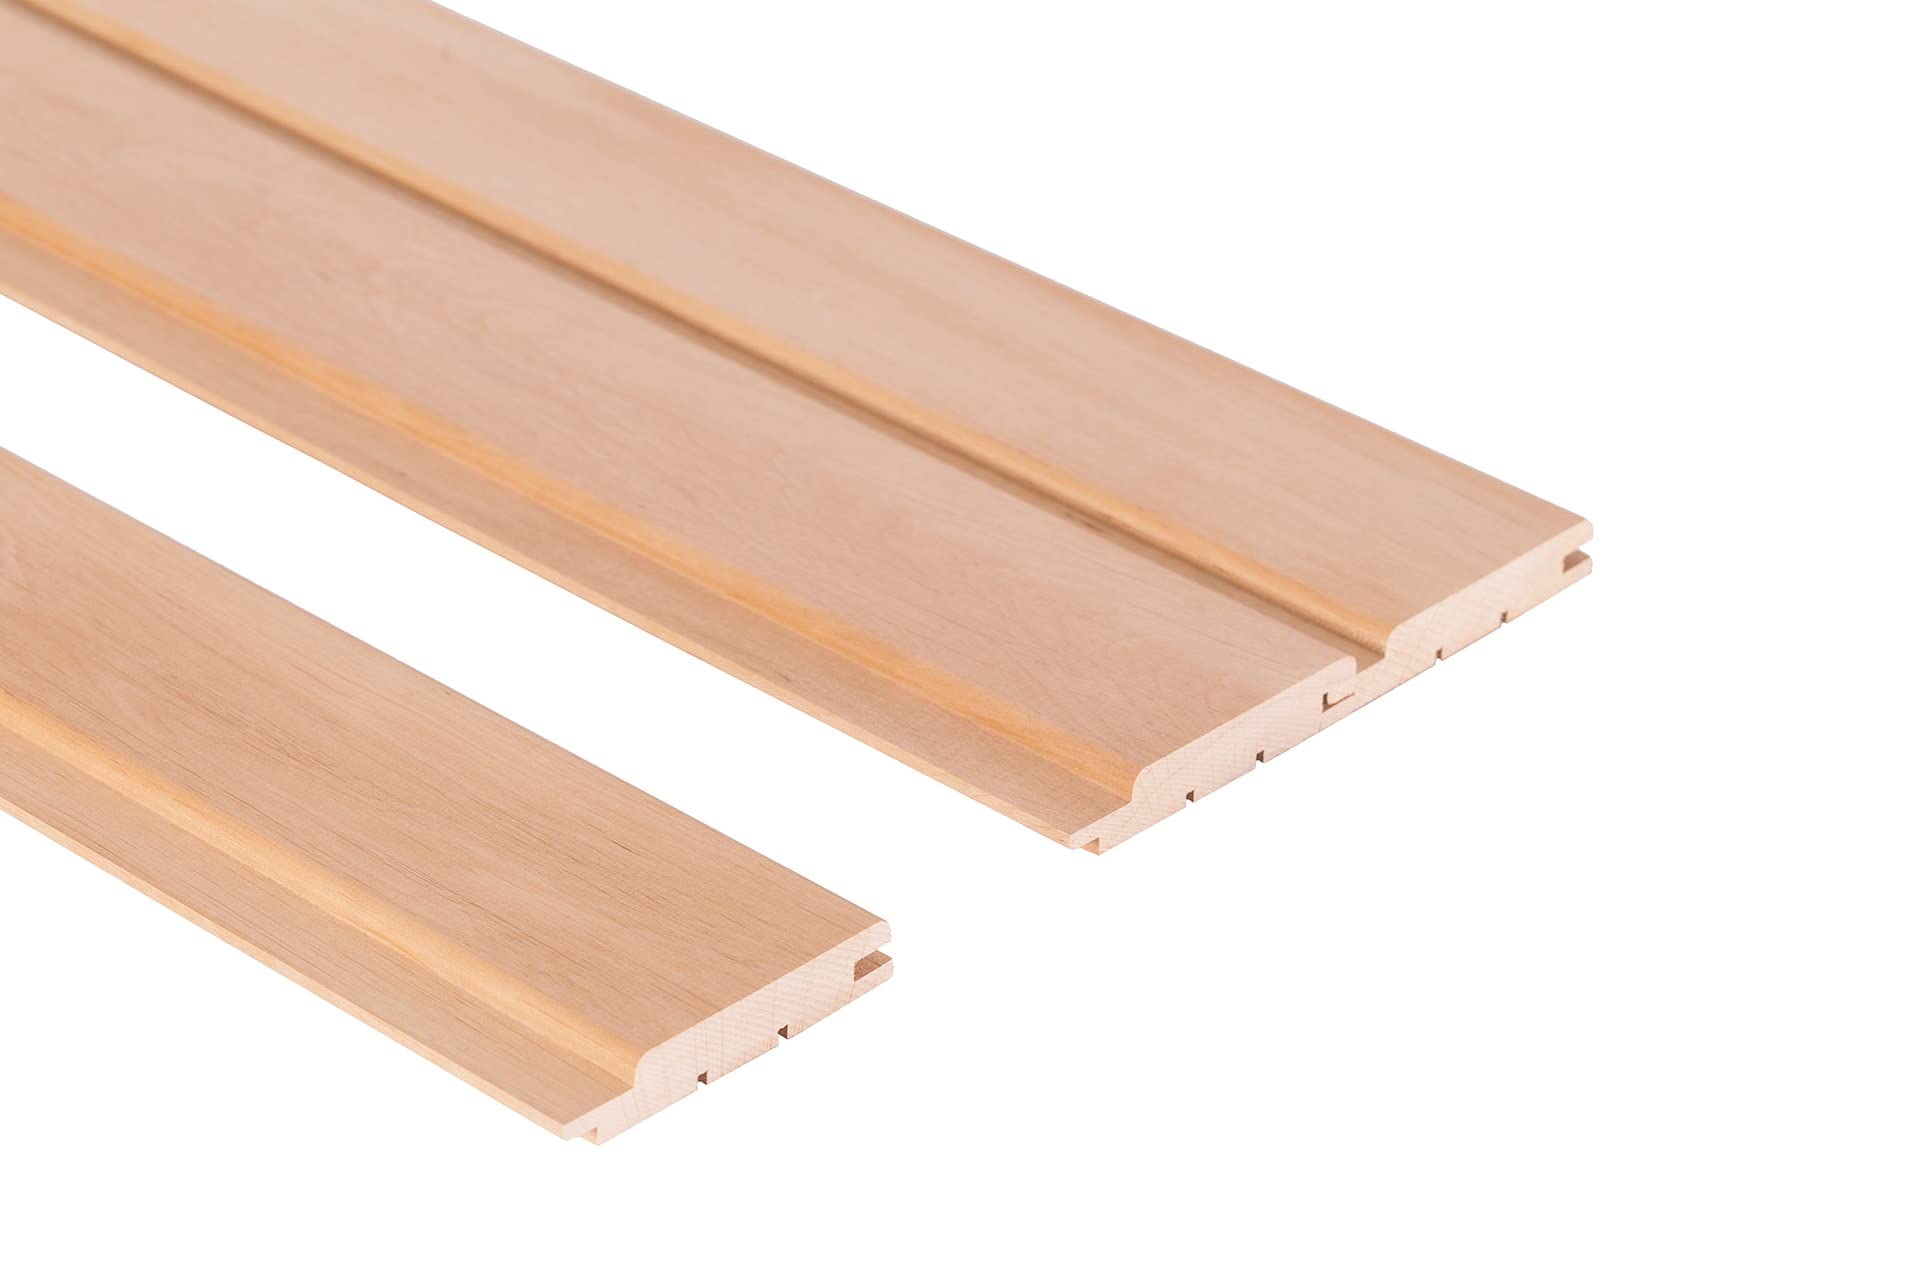 Saunainter Profilholz Erle Klasse A Nut-Feder STP 15x90mm 1800mm 6Stk Baumaterial für Sauna und Innenräume